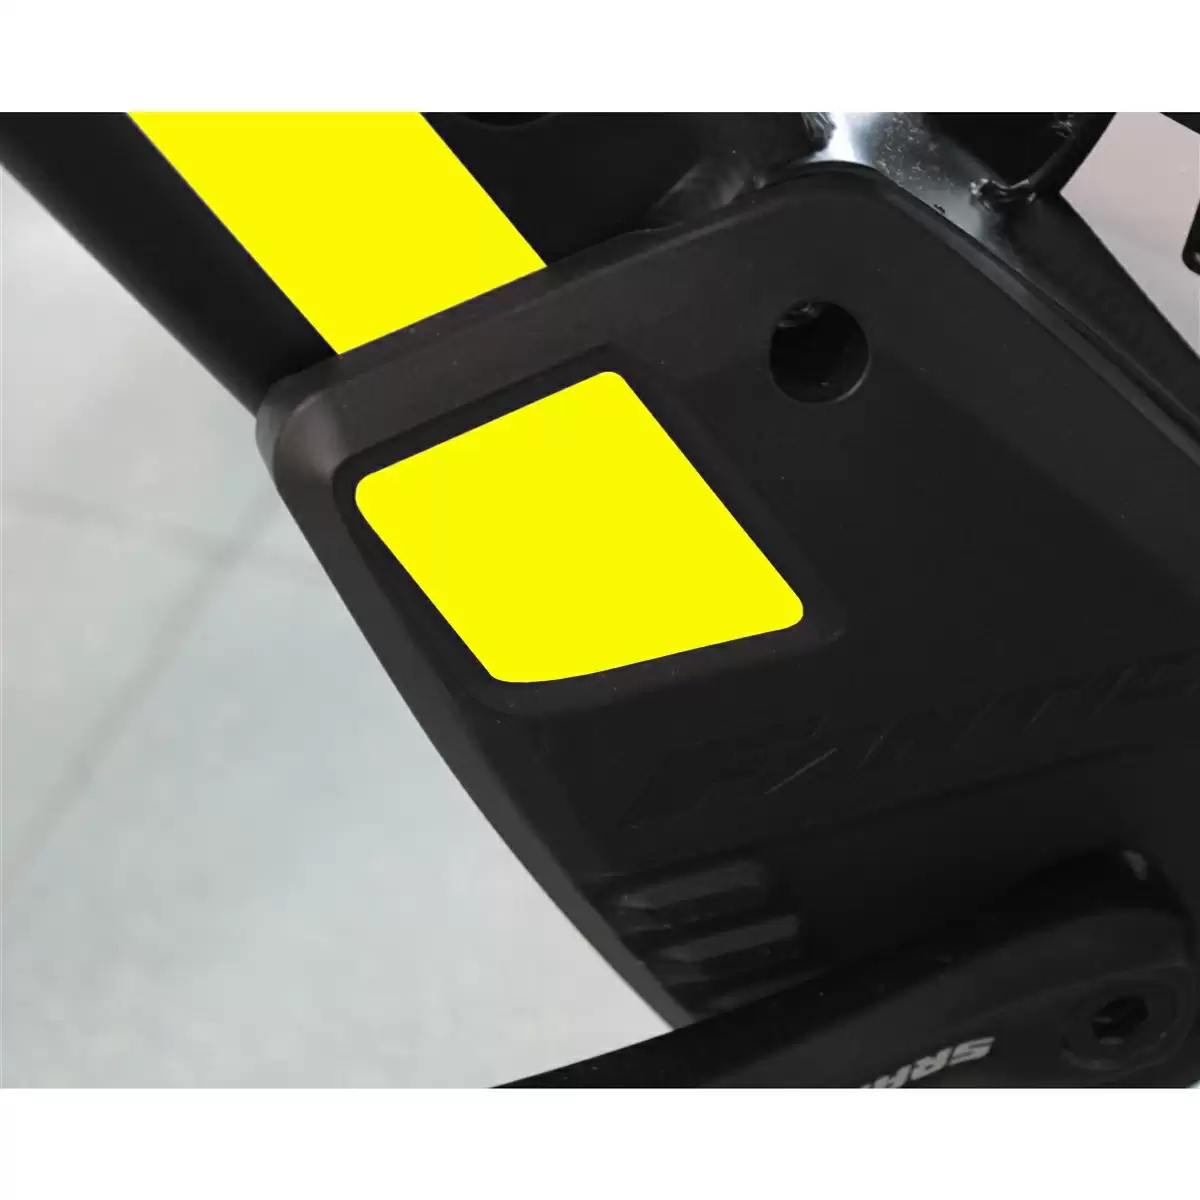 Coppia adesivi di ricambio carter Integra giallo fluo - image